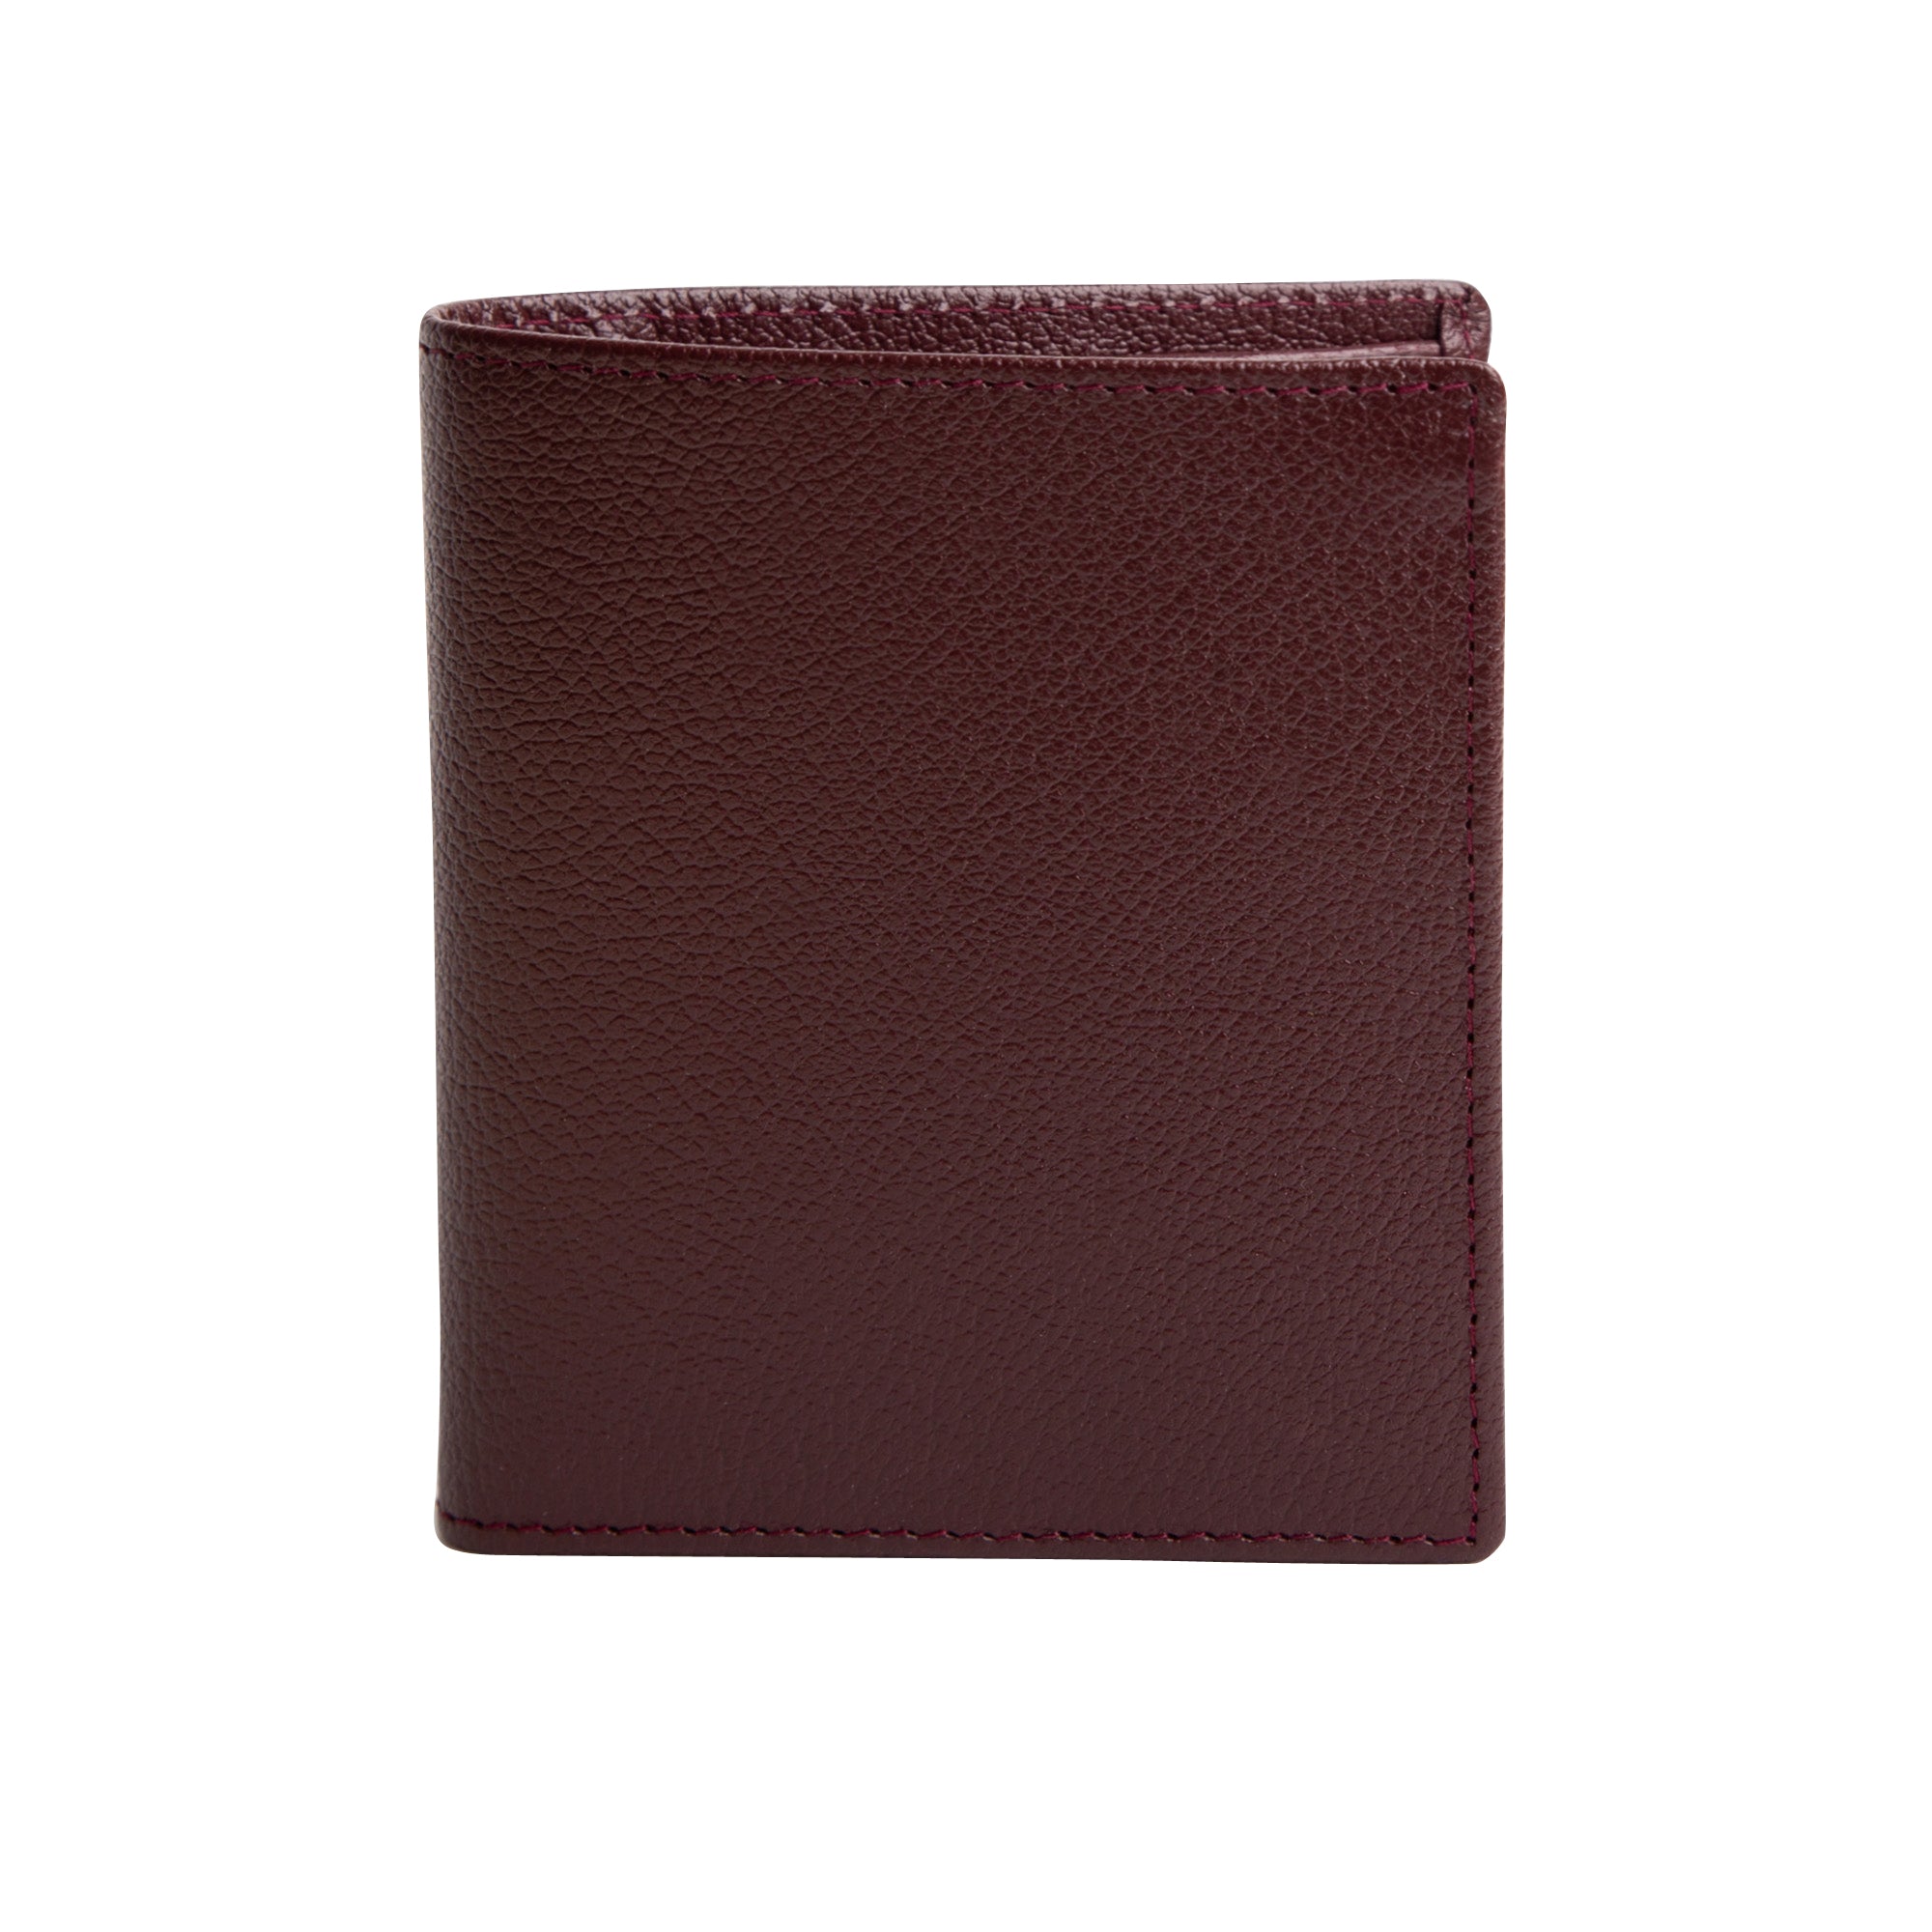 Ettinger Bourdeaux Capra Leather Mini Wallet